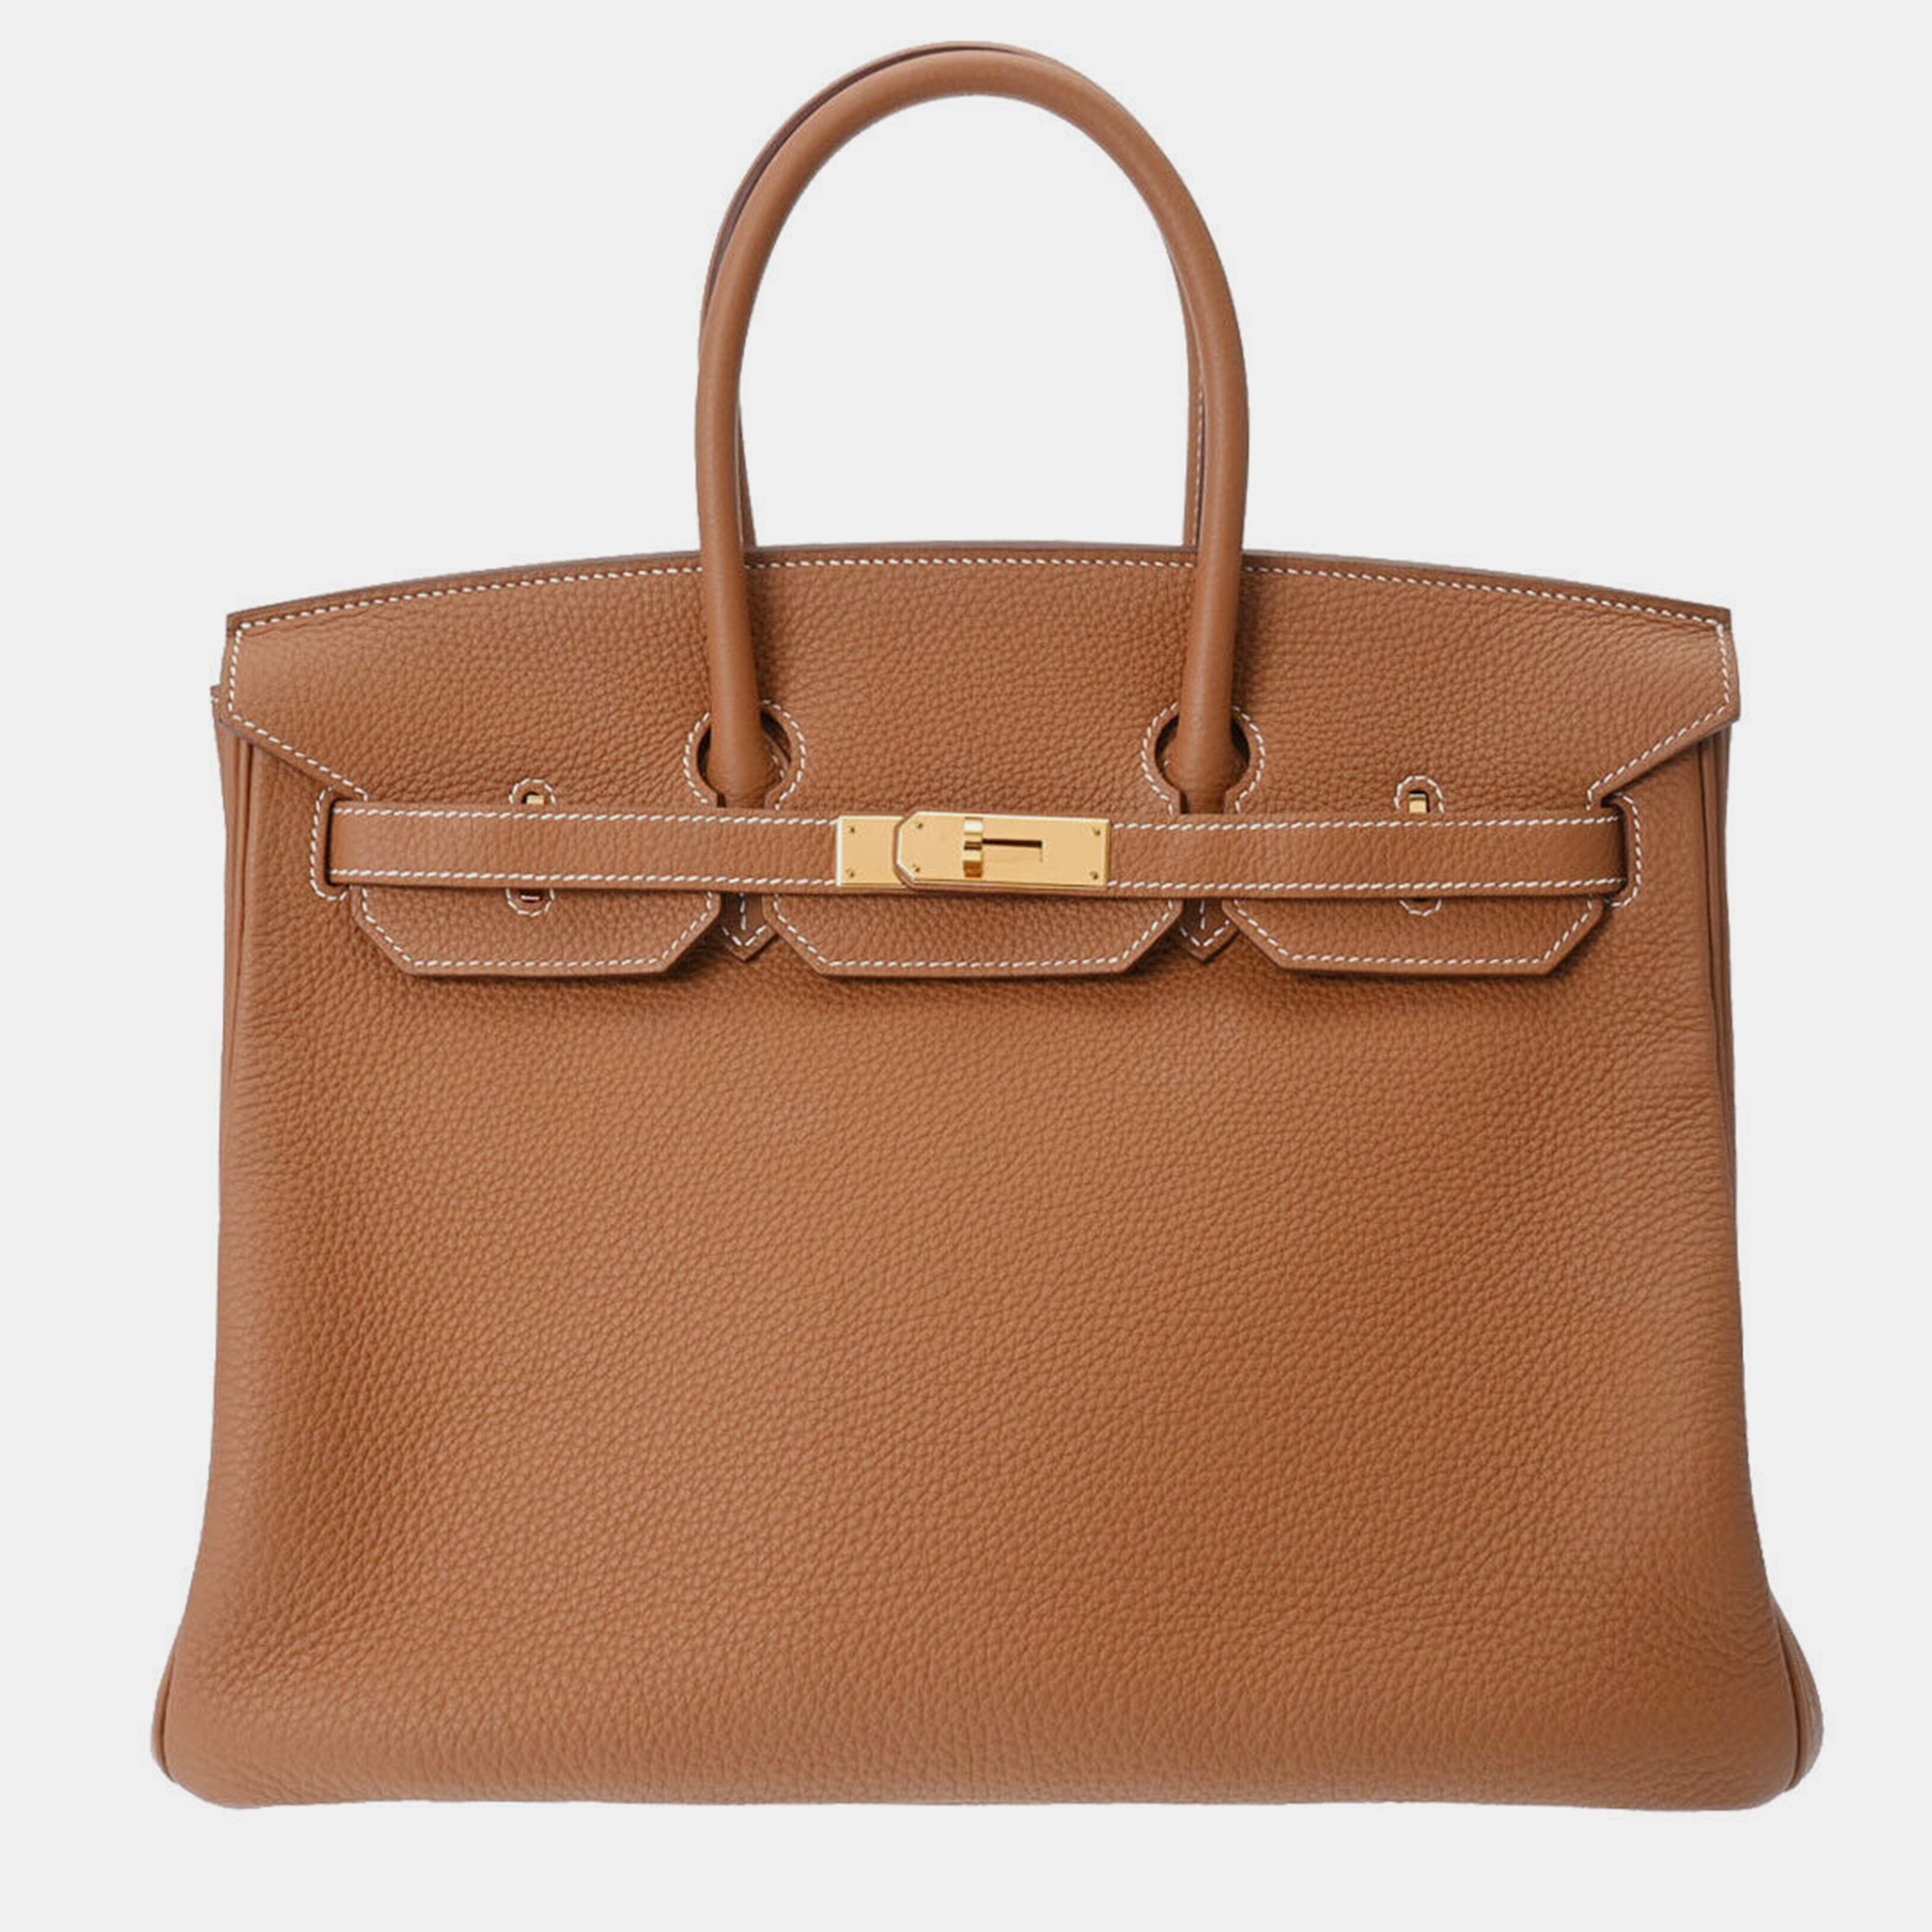 Pre-owned Hermes Brown Togo Leather Birkin 35 Handbag